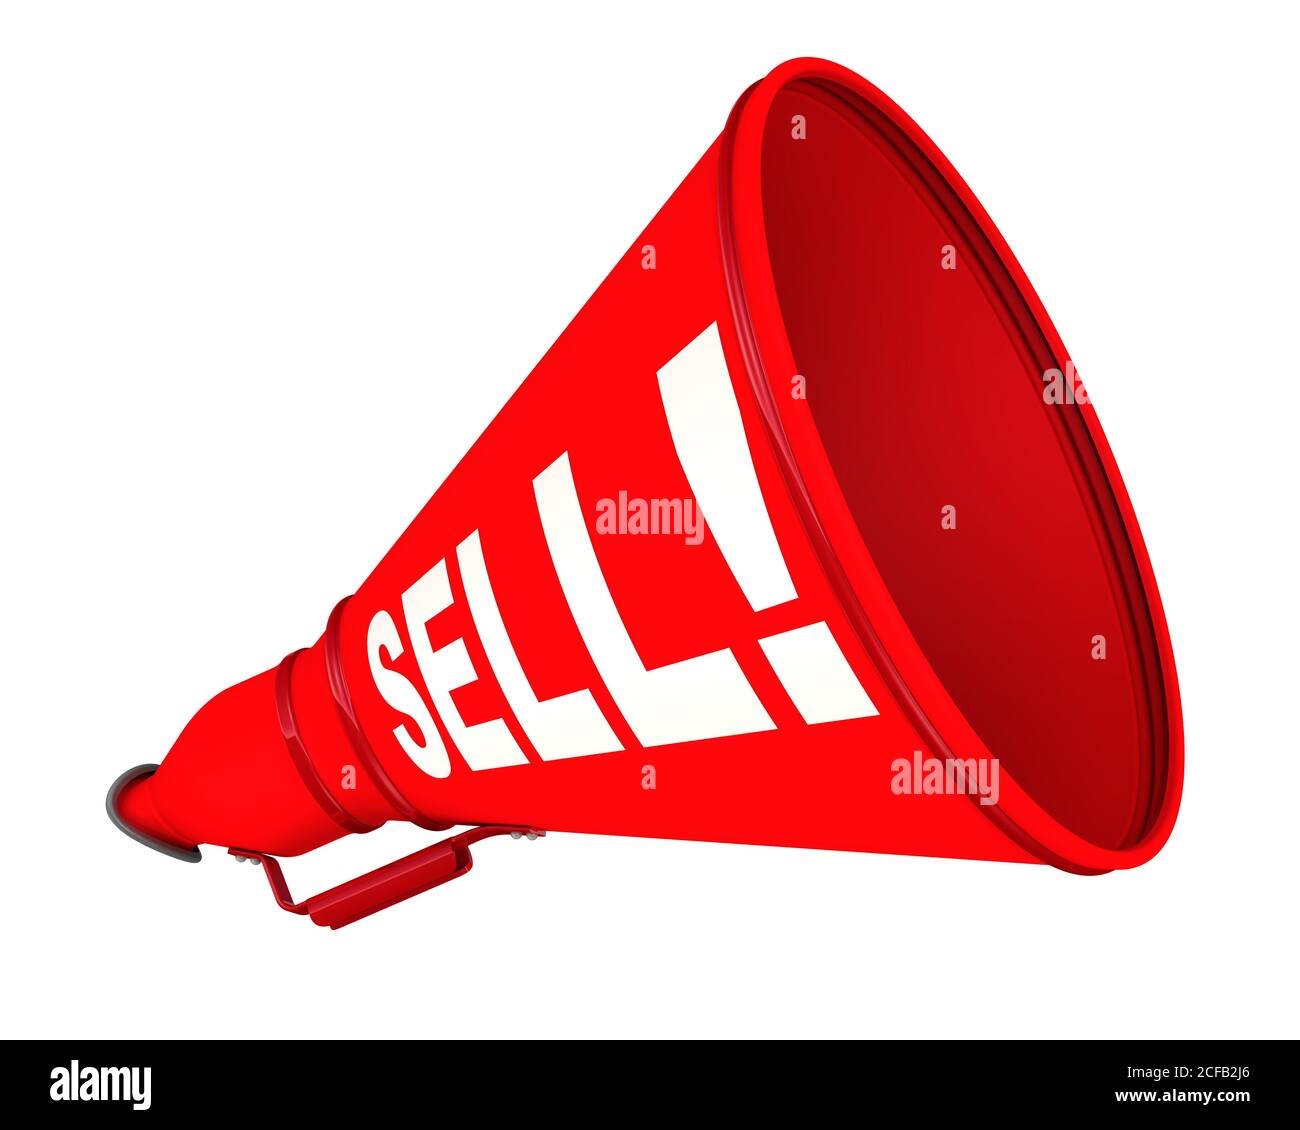 Vendi! Il megafono etichettato. Megafono rosso con testo bianco VENDERE! su sfondo bianco. Isolato. Illustrazione 3D Foto Stock